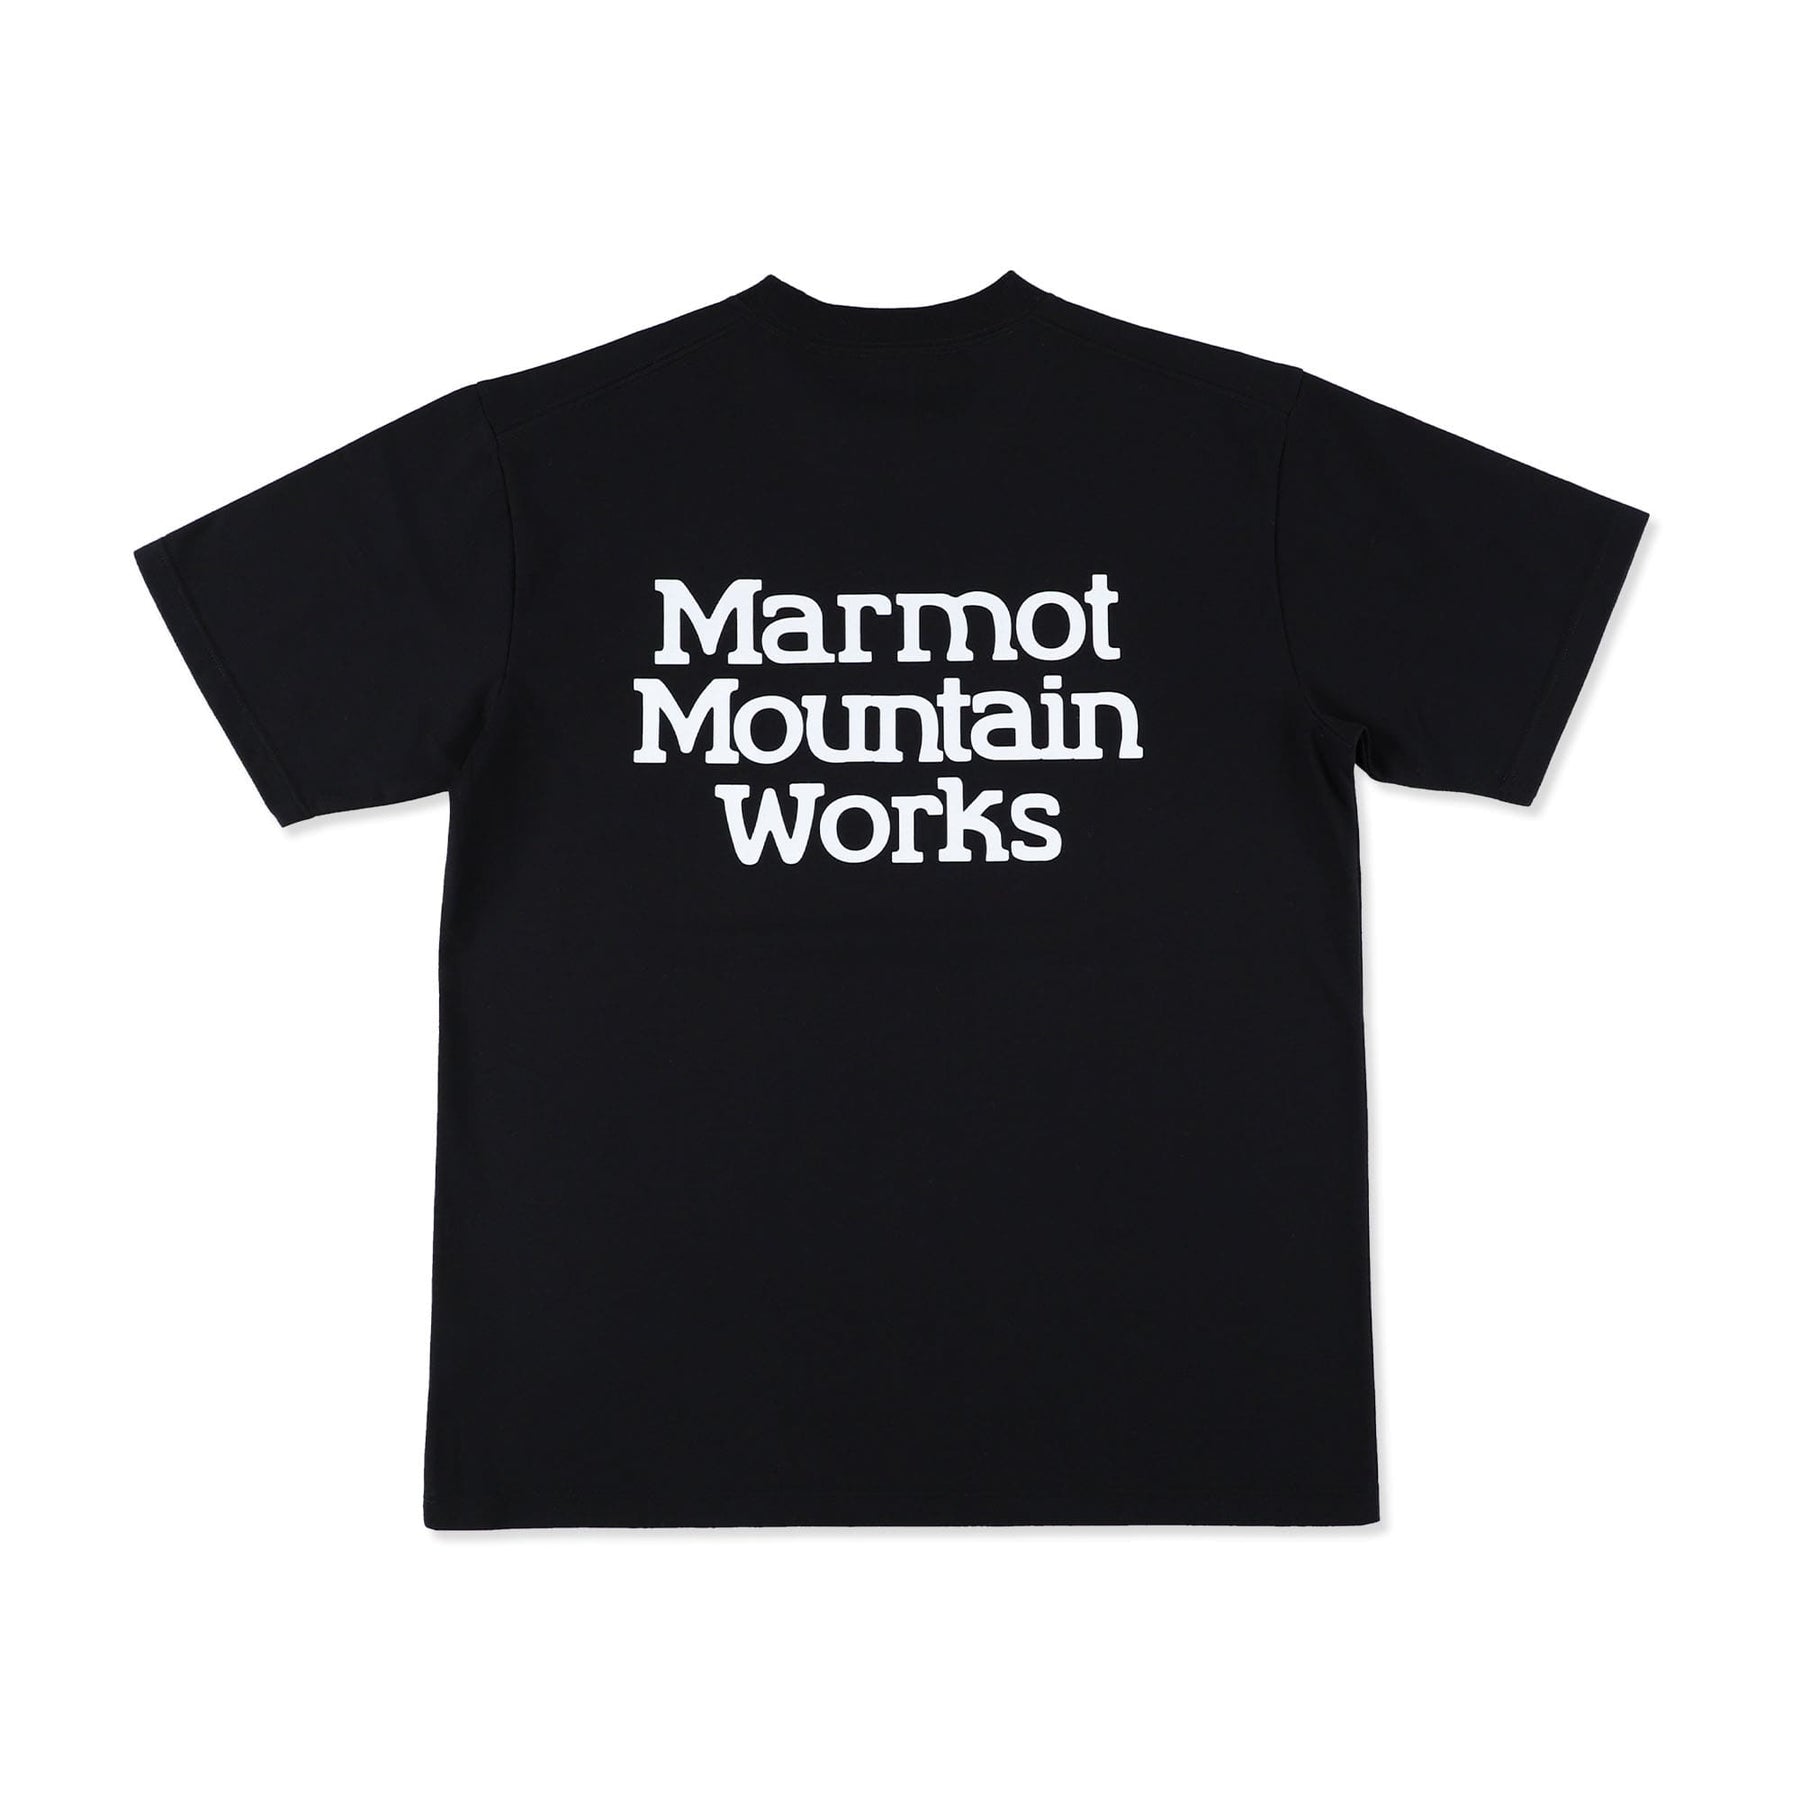 Marmots-T(マーモッツ Tシャツ)